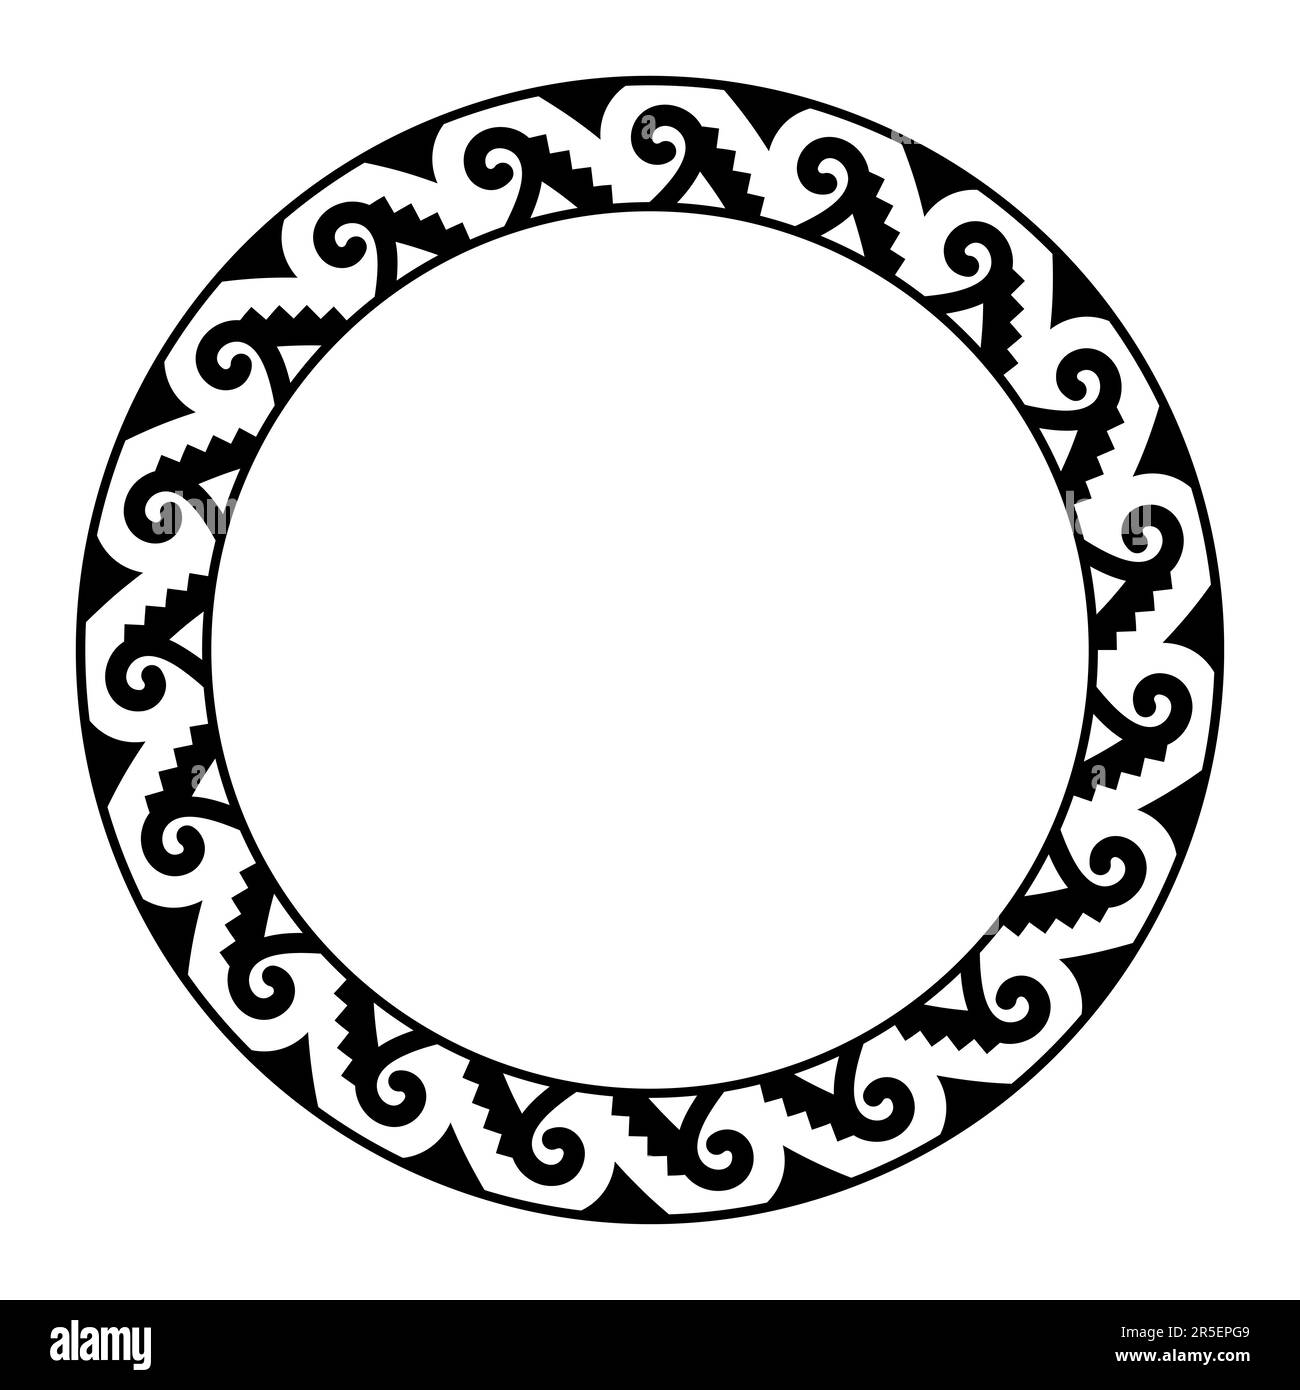 Motif de marche libre en spirale Aztec, cadre en cercle. Bordure décorative faite d'une spirale en forme de crochet de poisson, également appelée ankistron, reliée à des marches. Banque D'Images